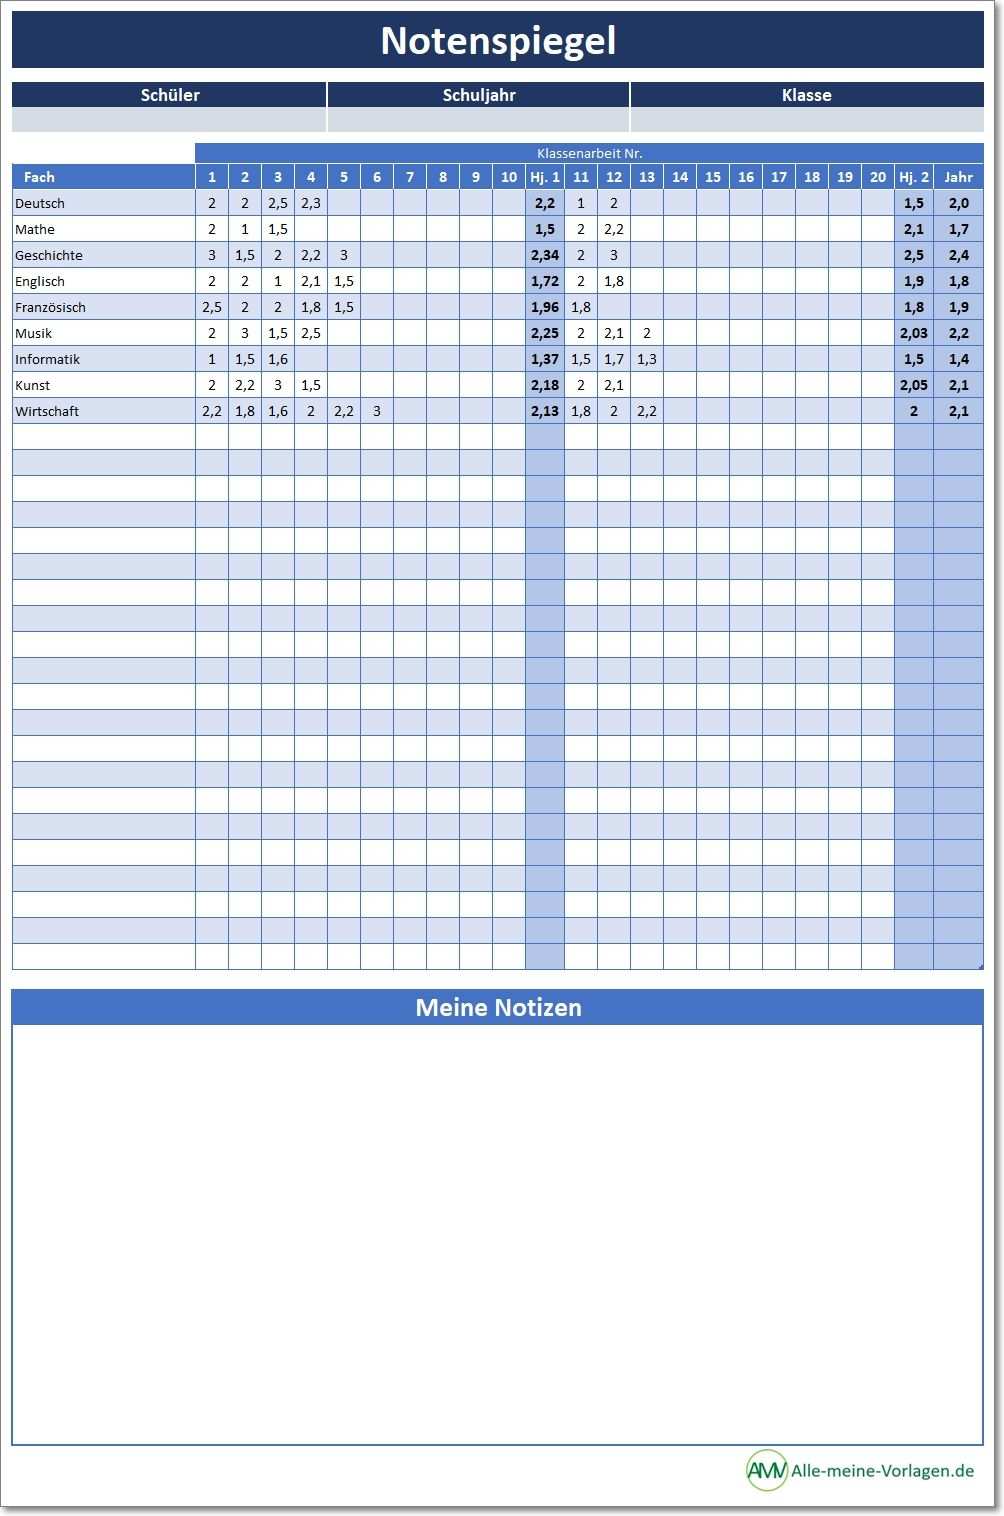 Notenspiegel Notenschnitt Mit Excel Berechnen In 2020 Excel